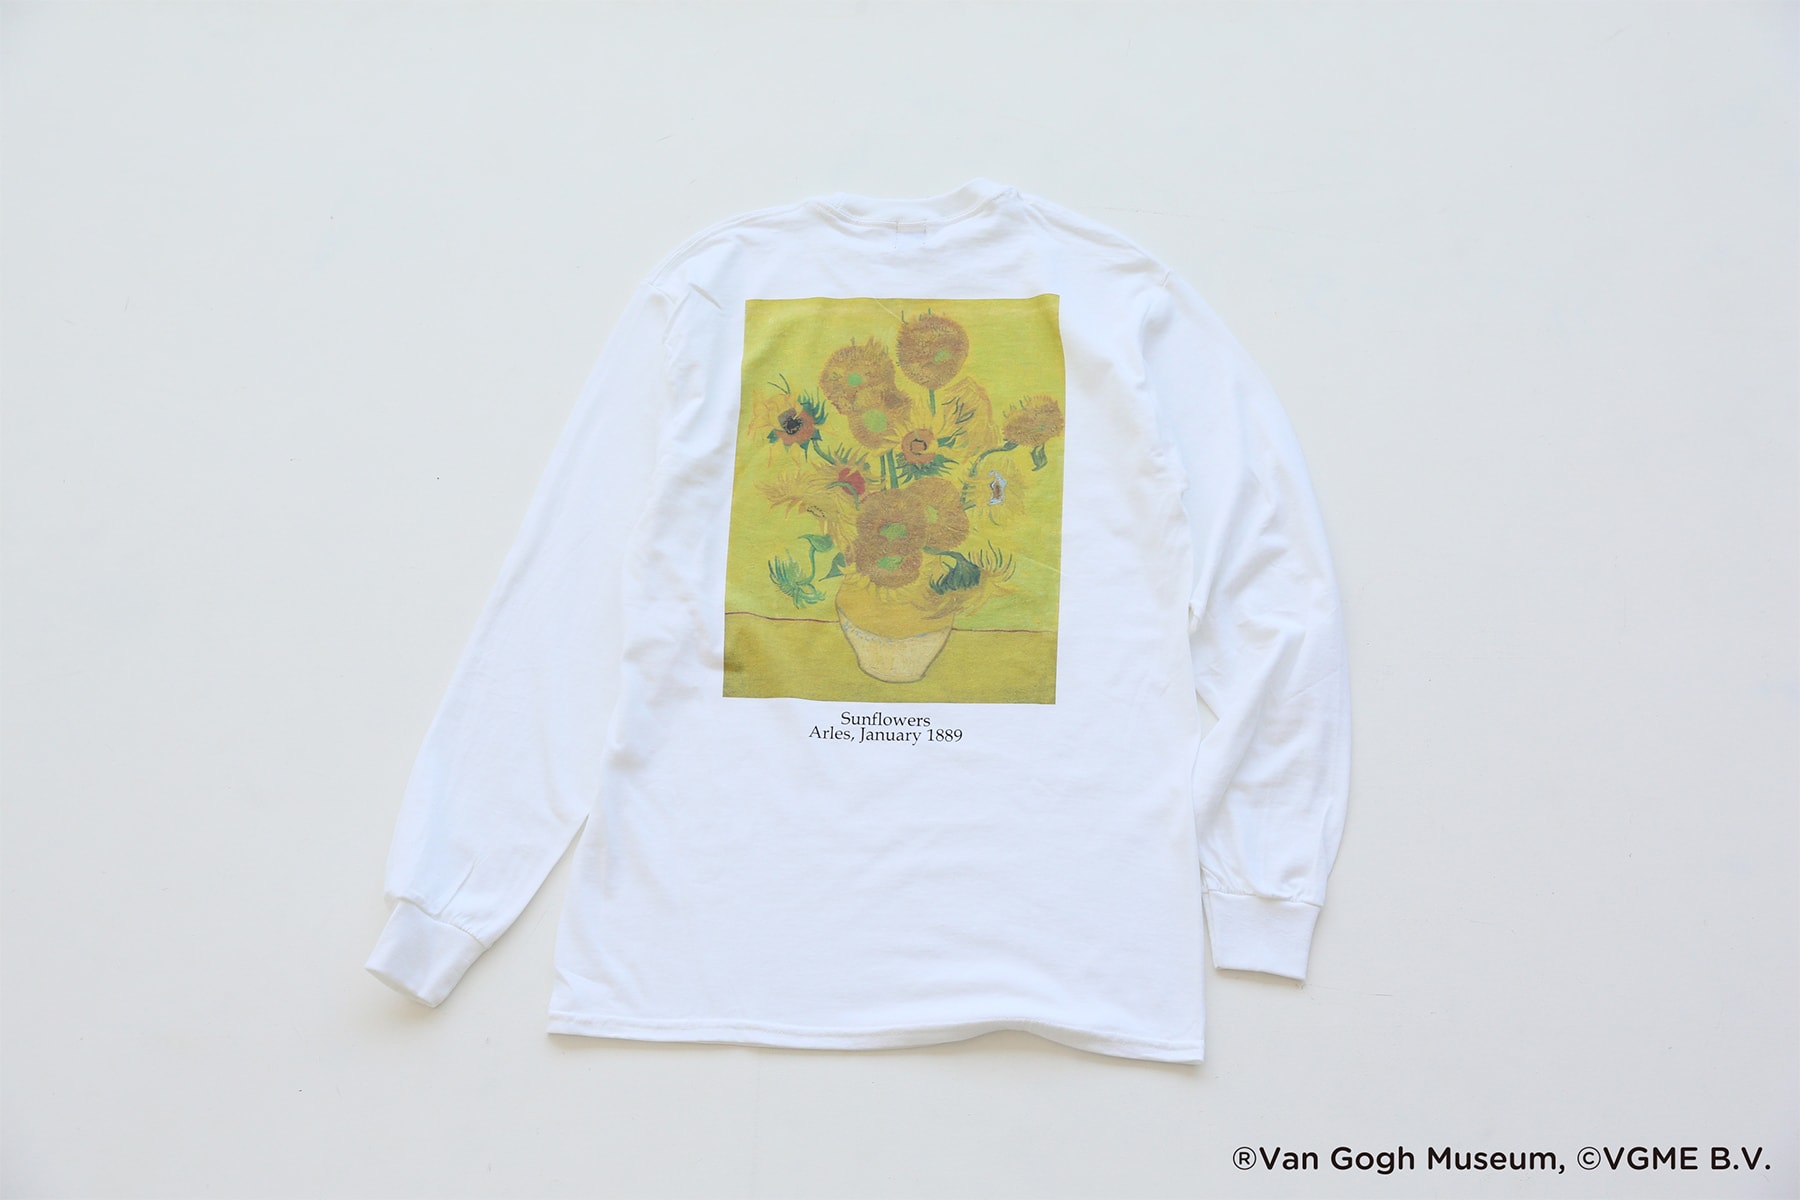 ゴッホ 名作アートを大胆に落とし込んだアパレルが JOURNAL STANDARD ジャーナルスタンダード Vincent Van Gogh フィンセント・ファン・ゴッホ Tシャツ HYPEBEAST ハイプビースト